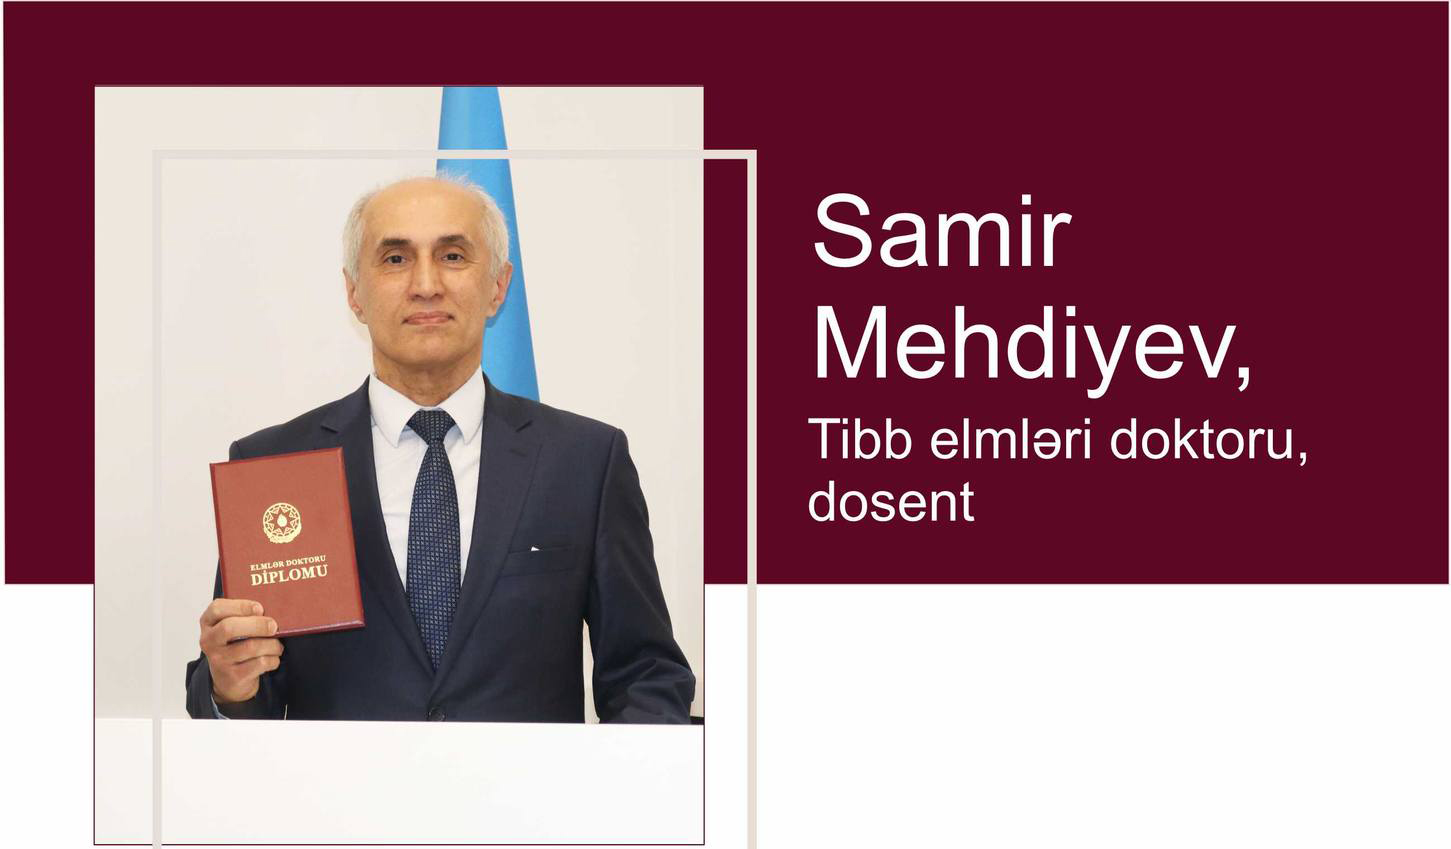 Samir Mehdiyev tibb elmləri doktoru elmi dərəcəsini alıb